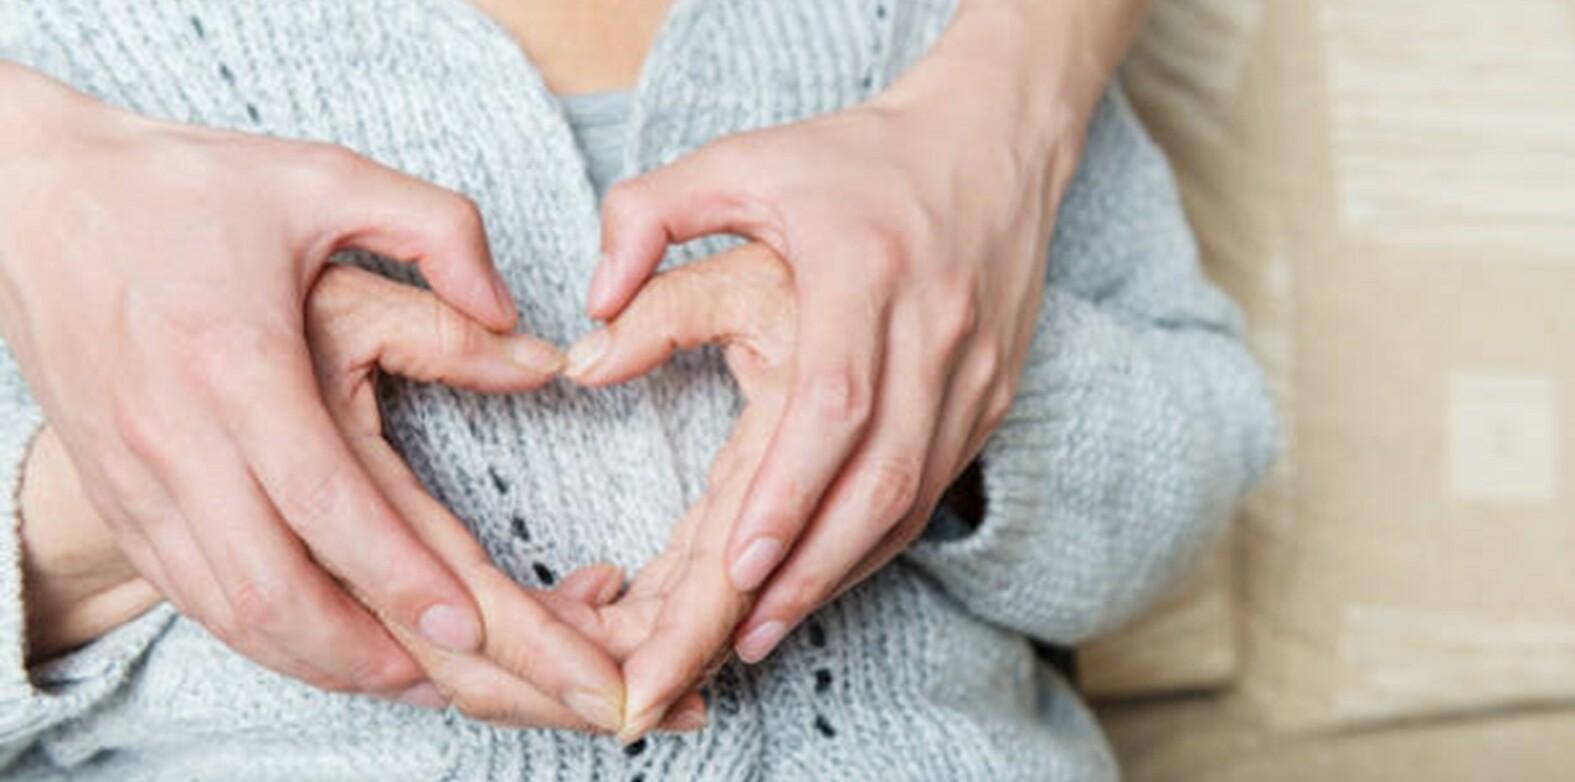 Vanhan ihmisen ja nuoremman ihmisen kädet muodostavat yhdessä sydän-kuvion.